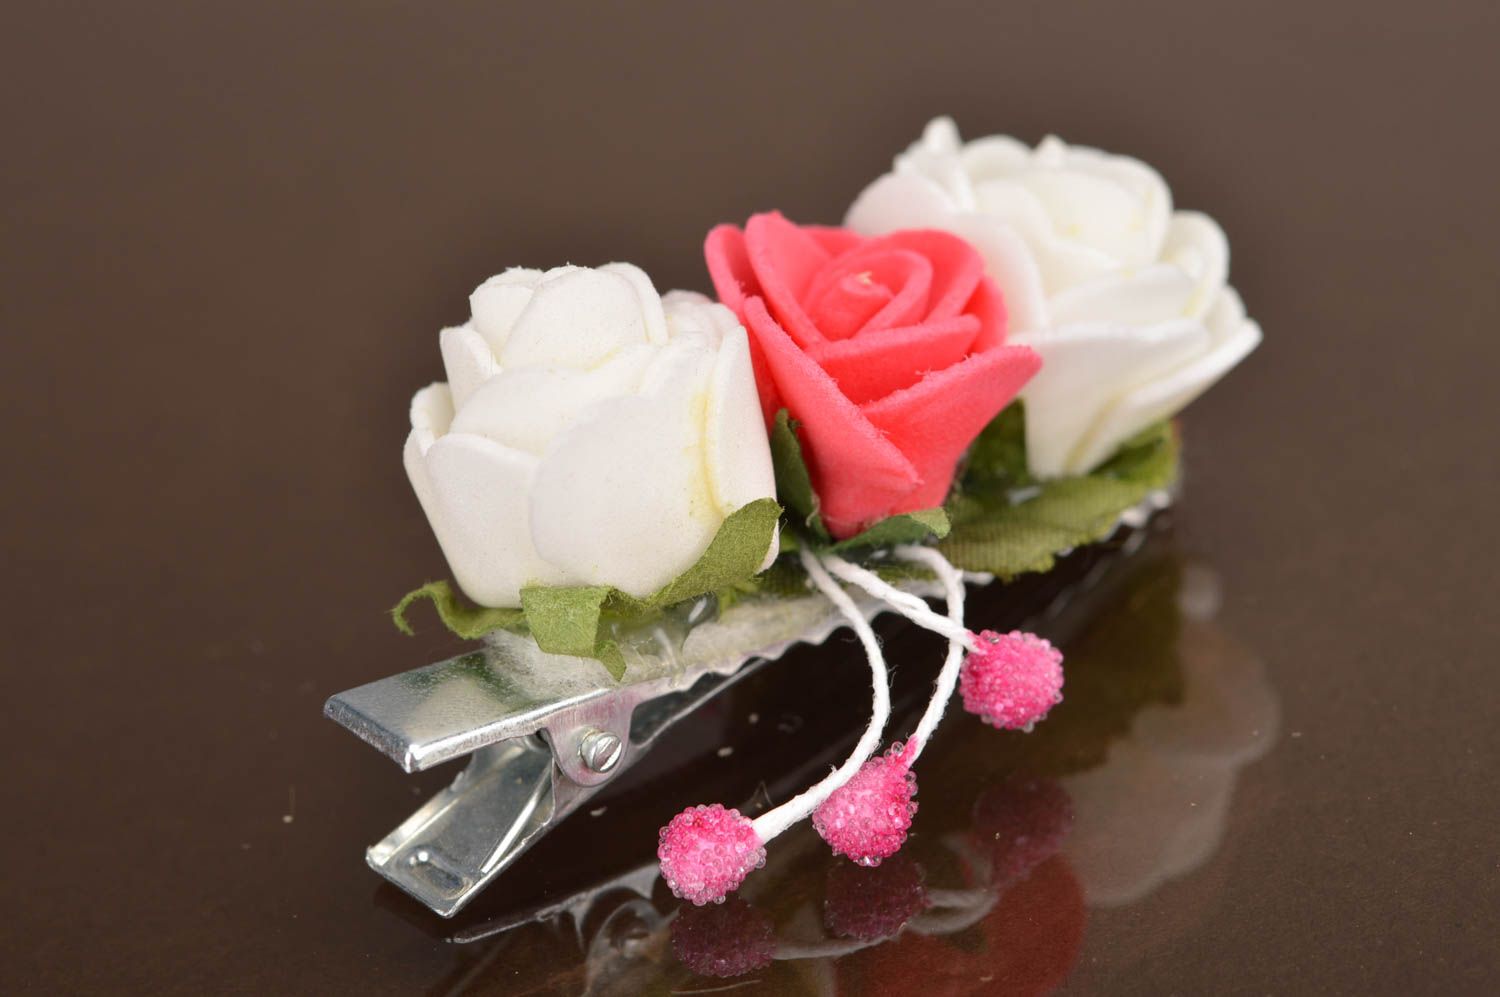 Детская заколка цветок розы белая с розовым маленькая красивая ручной работы фото 2